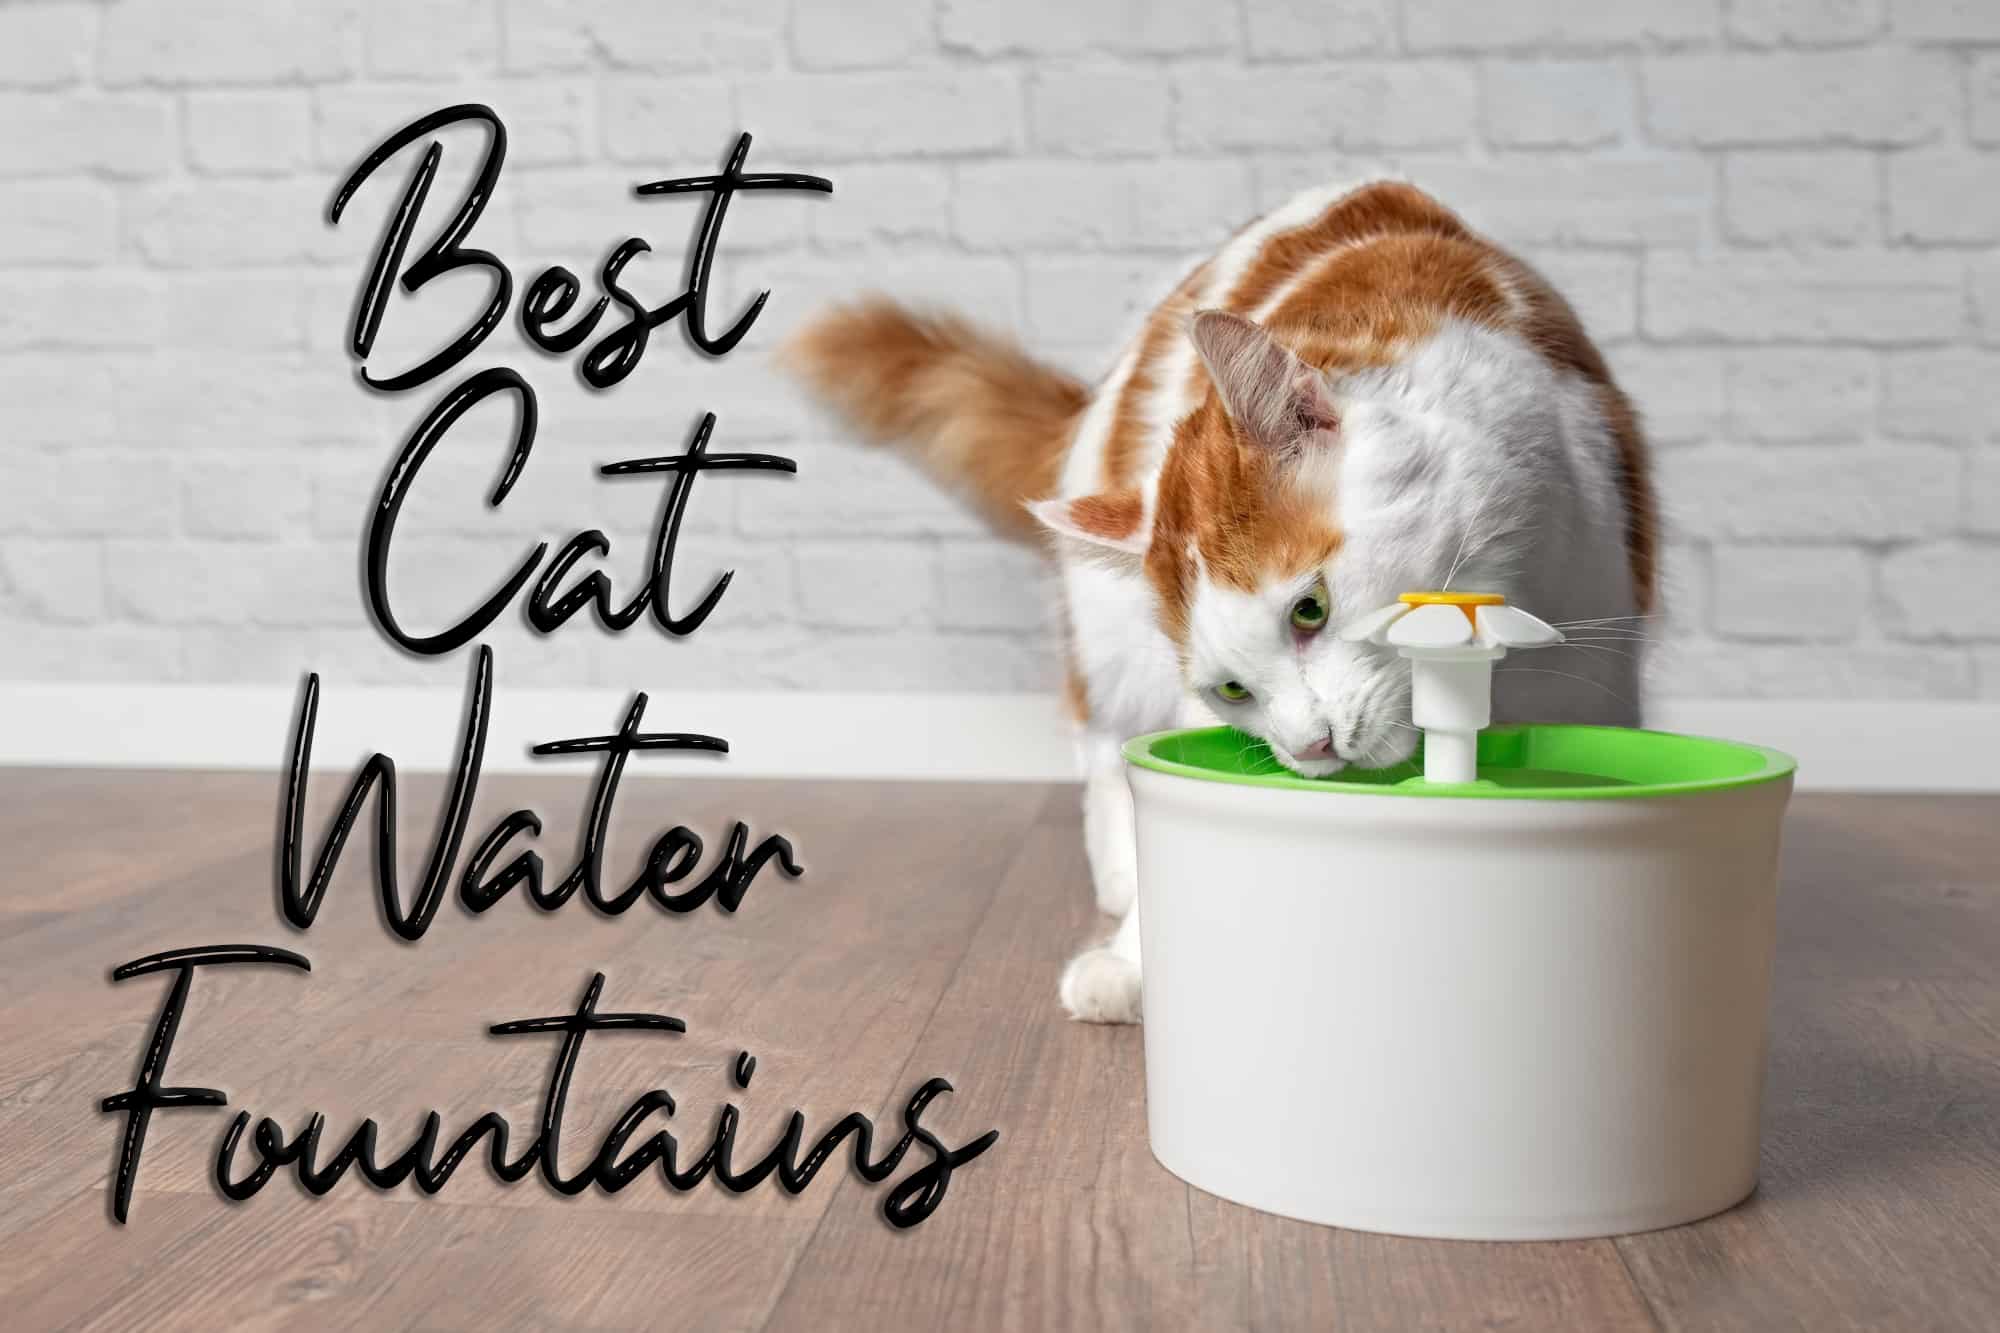 Beste Kattenwaterfonteinen